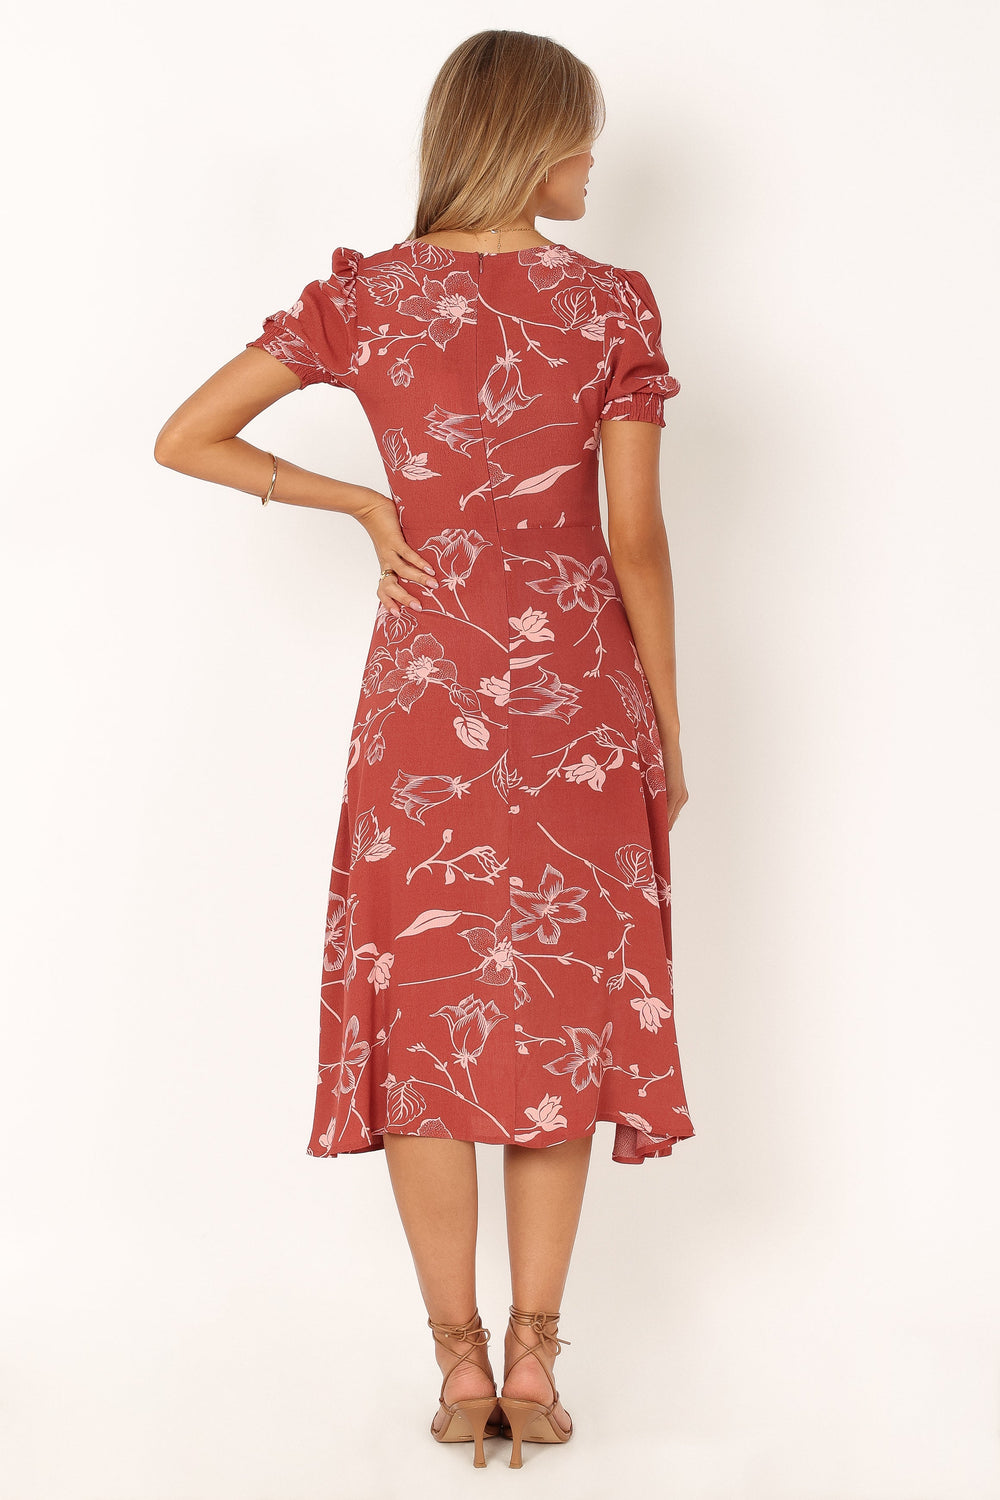 DRESSES @Franklin Dress - Rust Floral